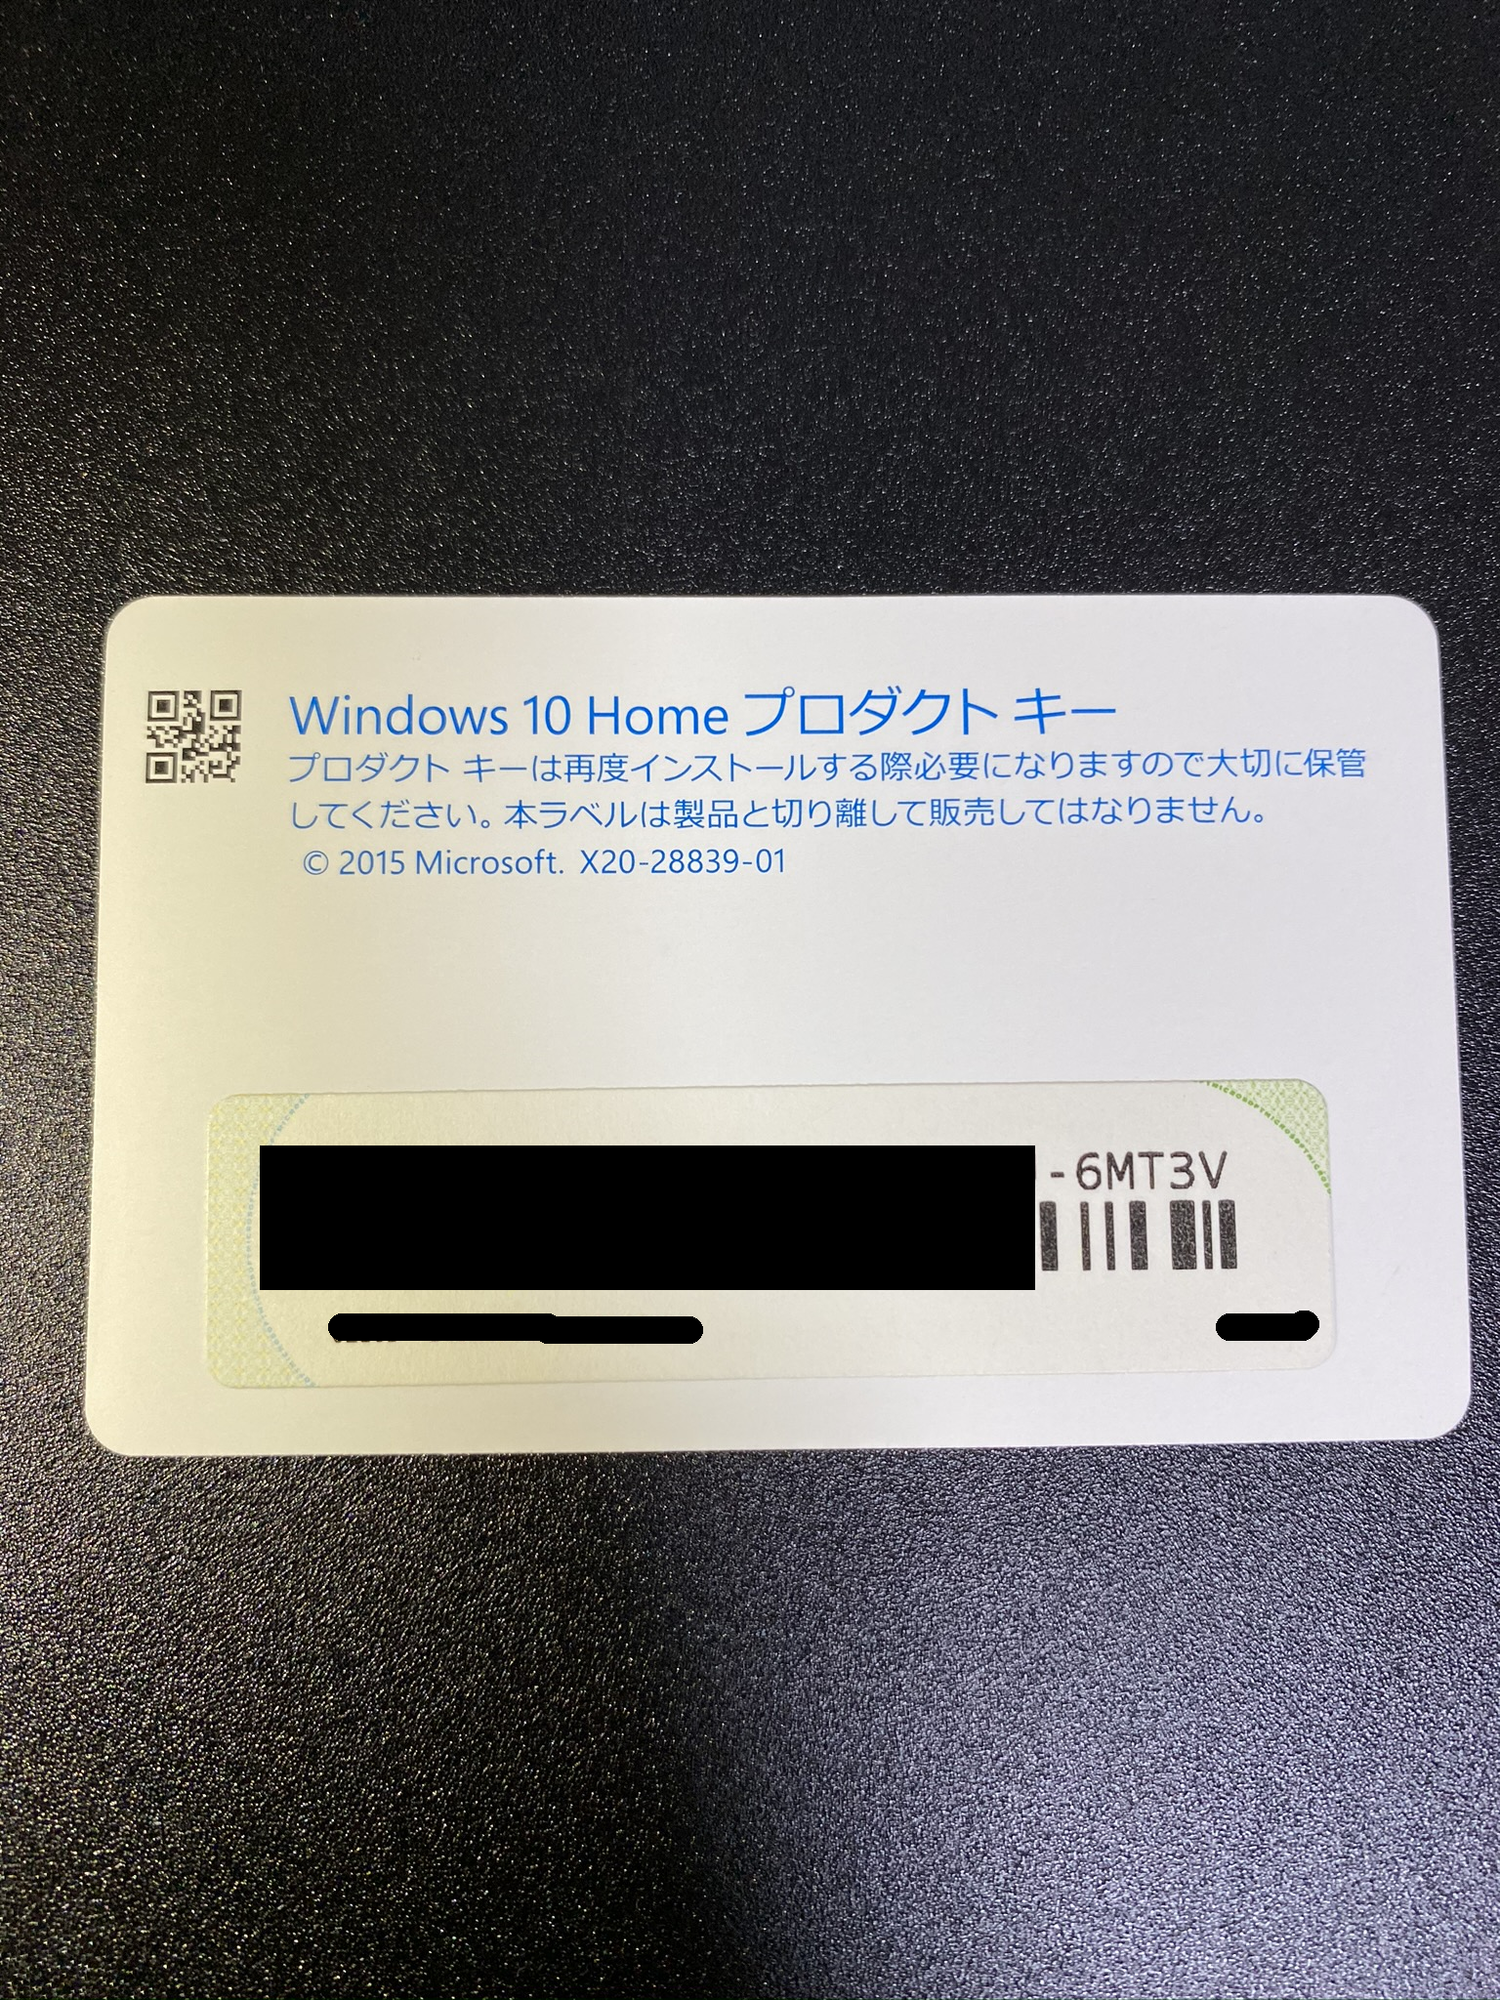 Windows 10 Home b5099119-306f-4607-b763-aca34bd2a396?upload=true.png